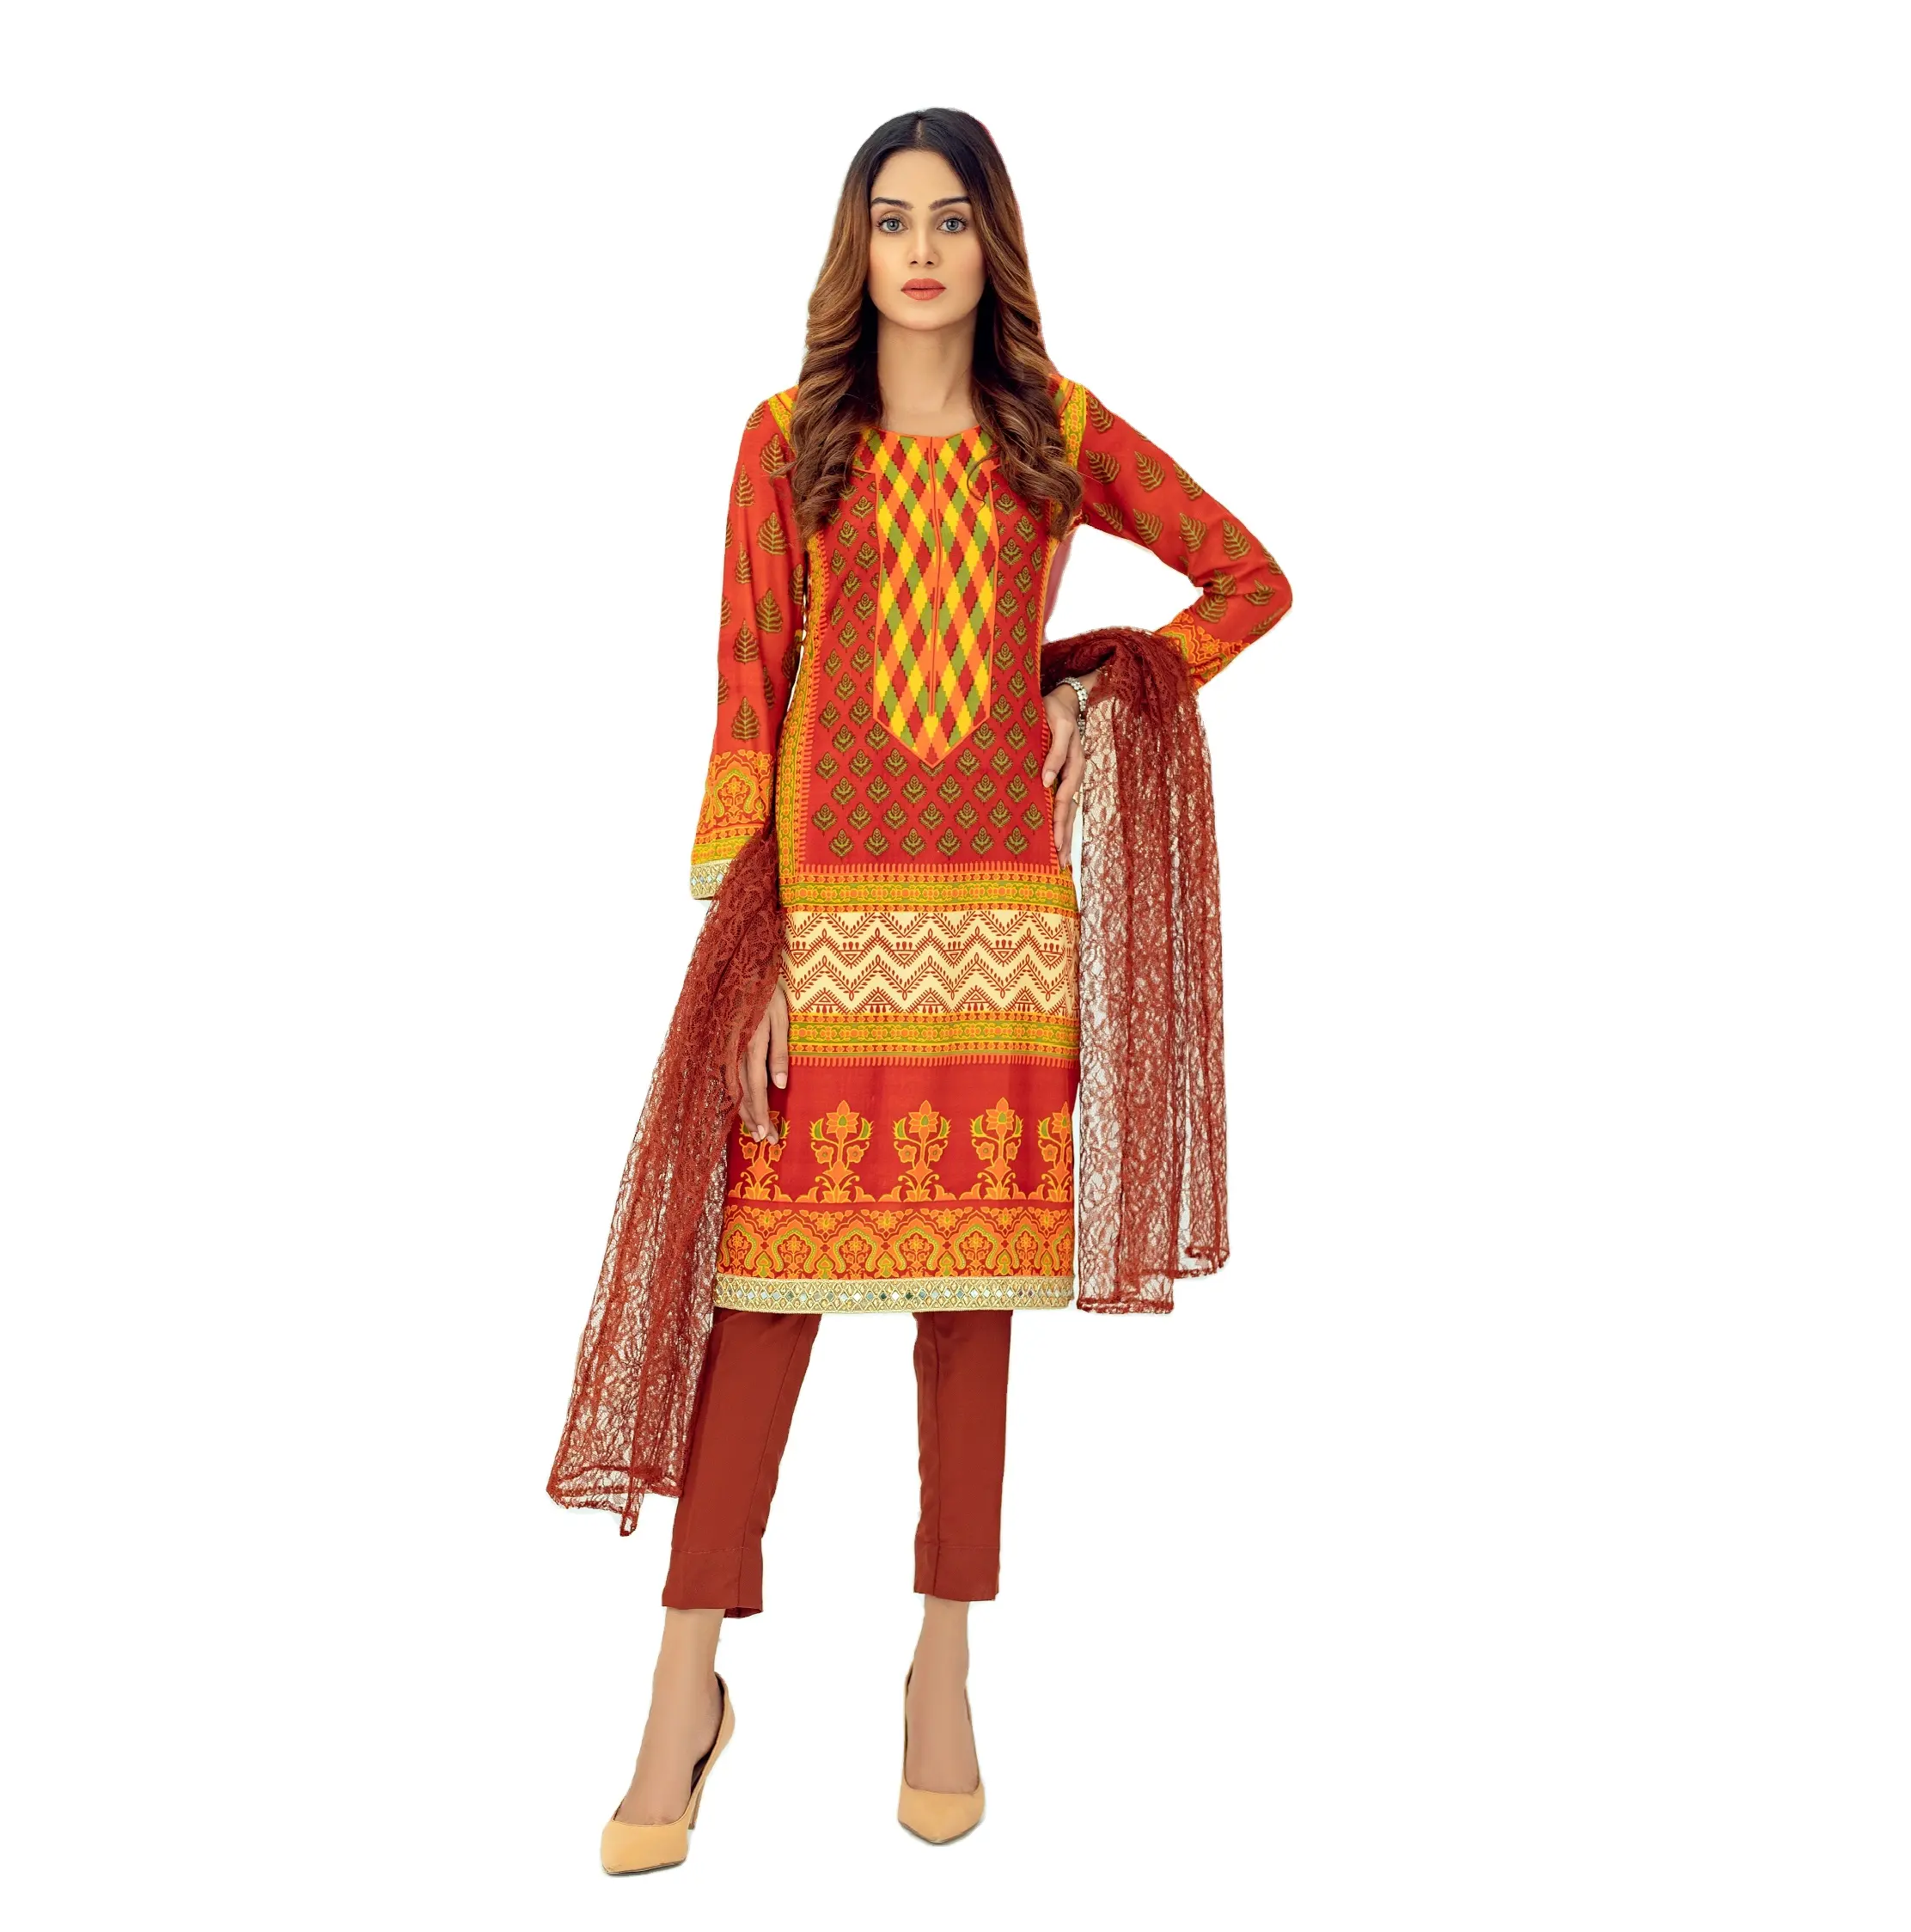 Pakistan Fashion Setelan Rumput Wanita Terbaru Walet Kameez Kemeja Bordir Celana Dupatta Tanpa Jahitan Formal Salwar Kameez Setelan